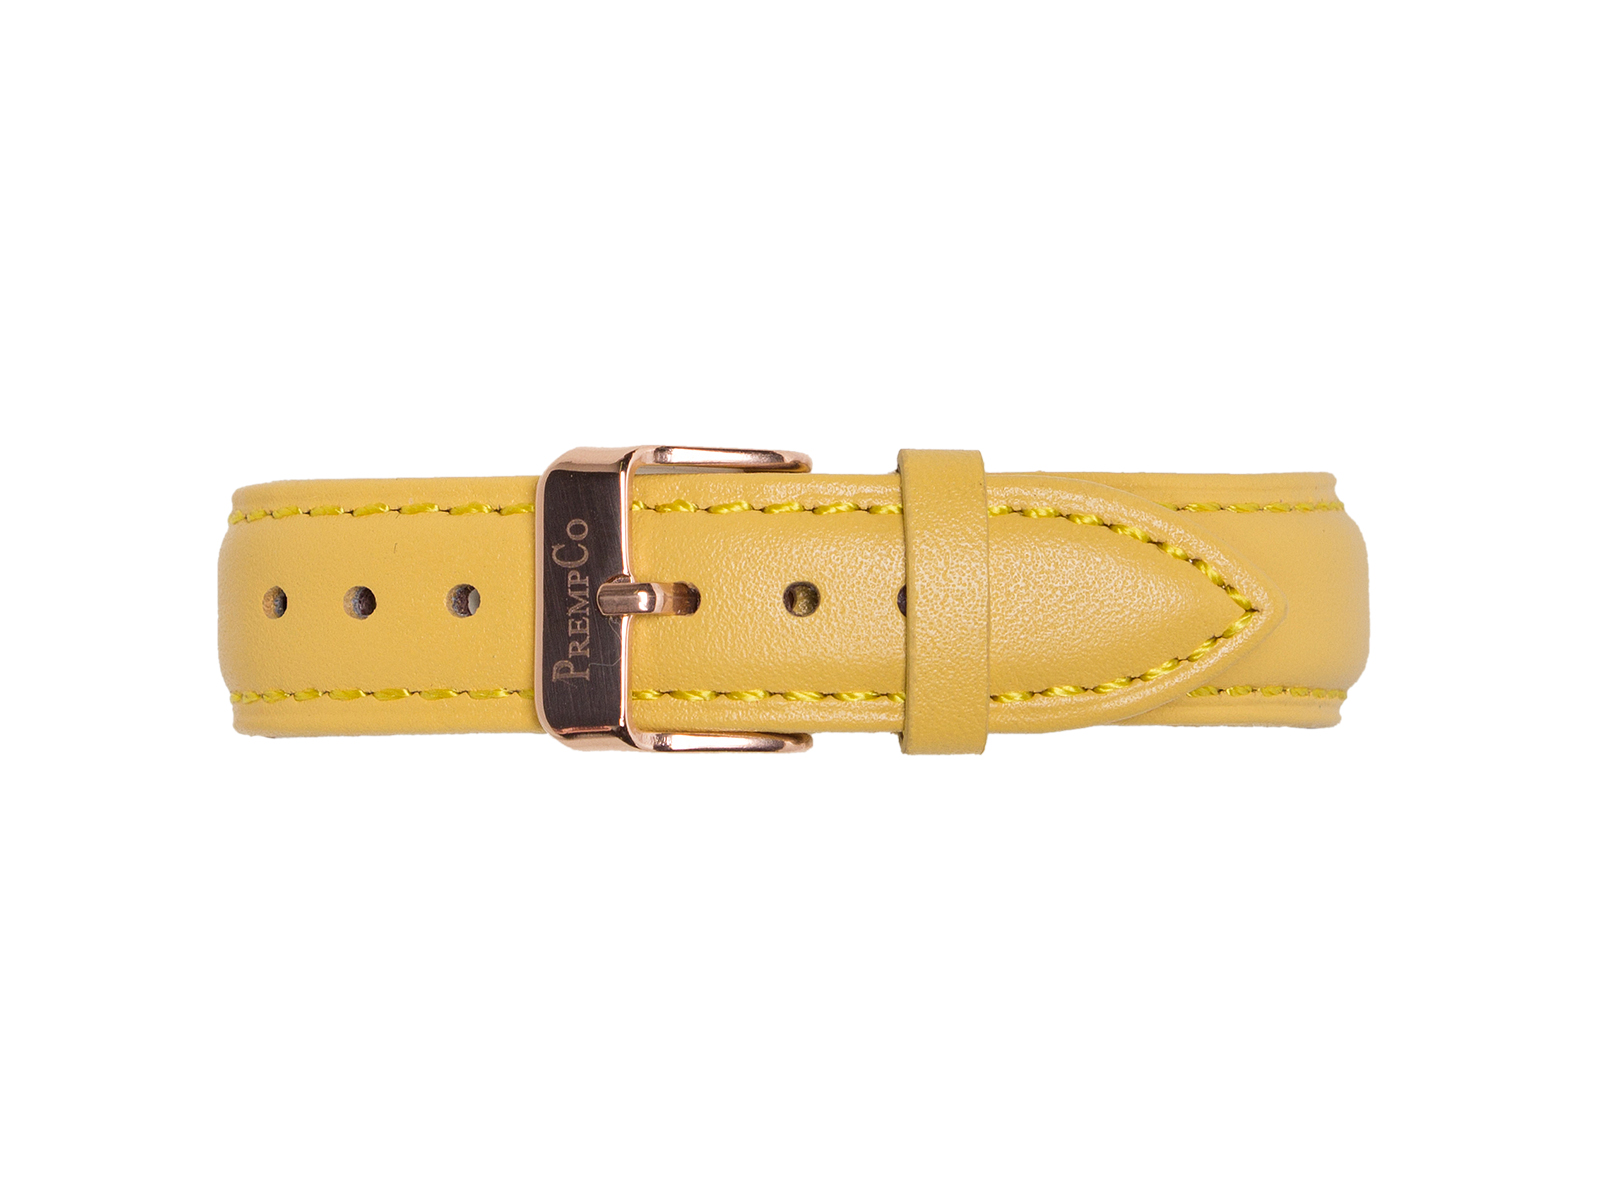 Gelbes Schnellwechselband PrempCo Leder Uhrenband Uhrenarmband Schnellwechseluhrenband schnellwechseluhrenarmband